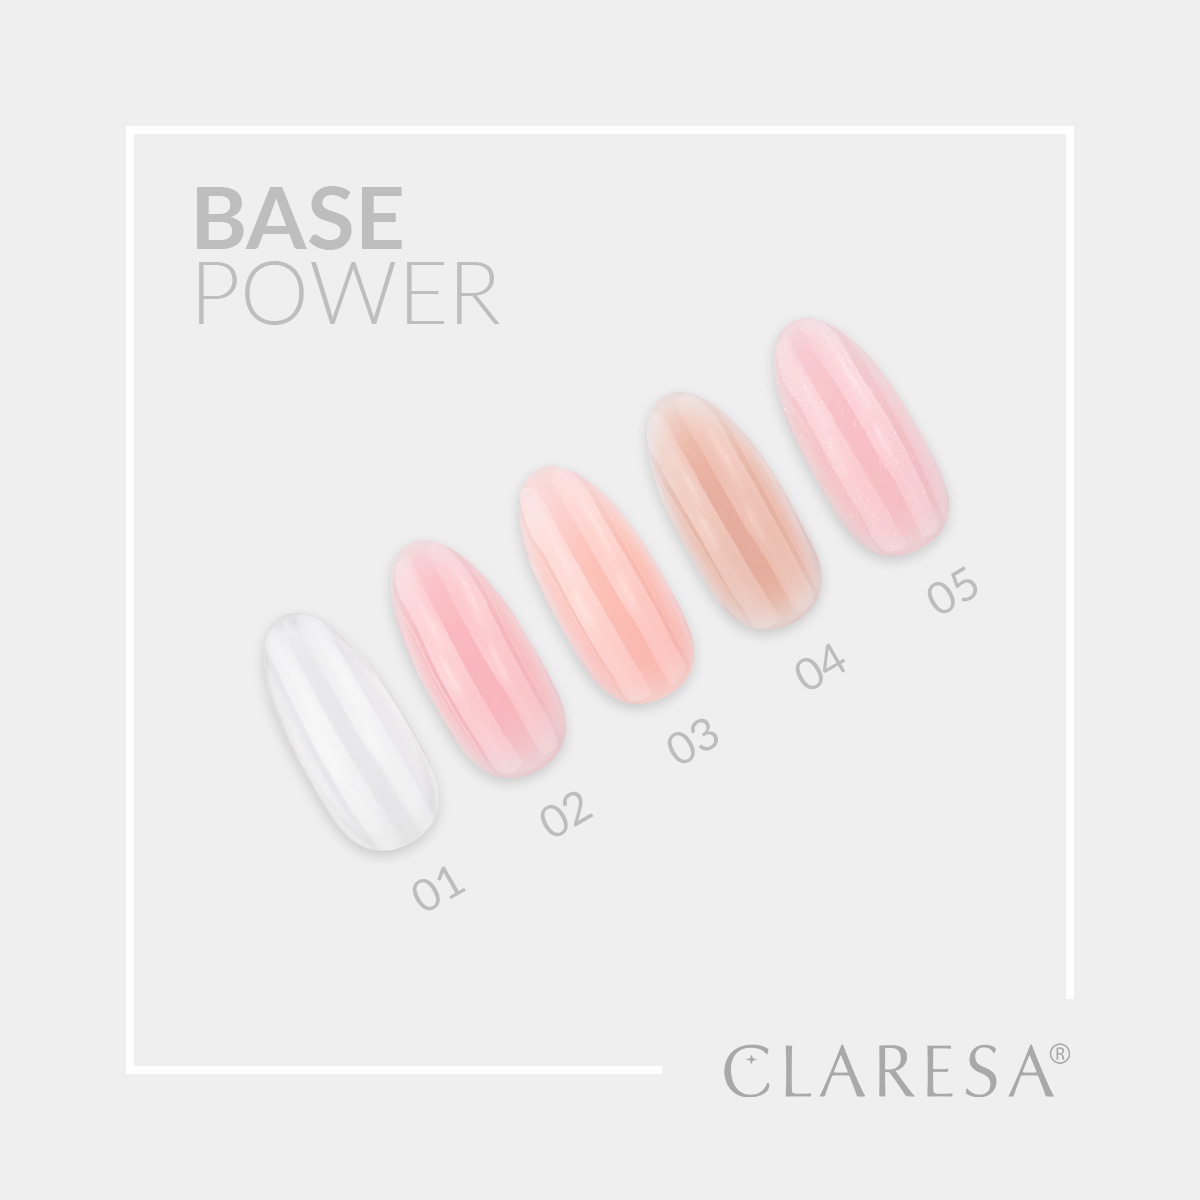 CLARESA UV/LED Base Power 01 - Clear - 5g